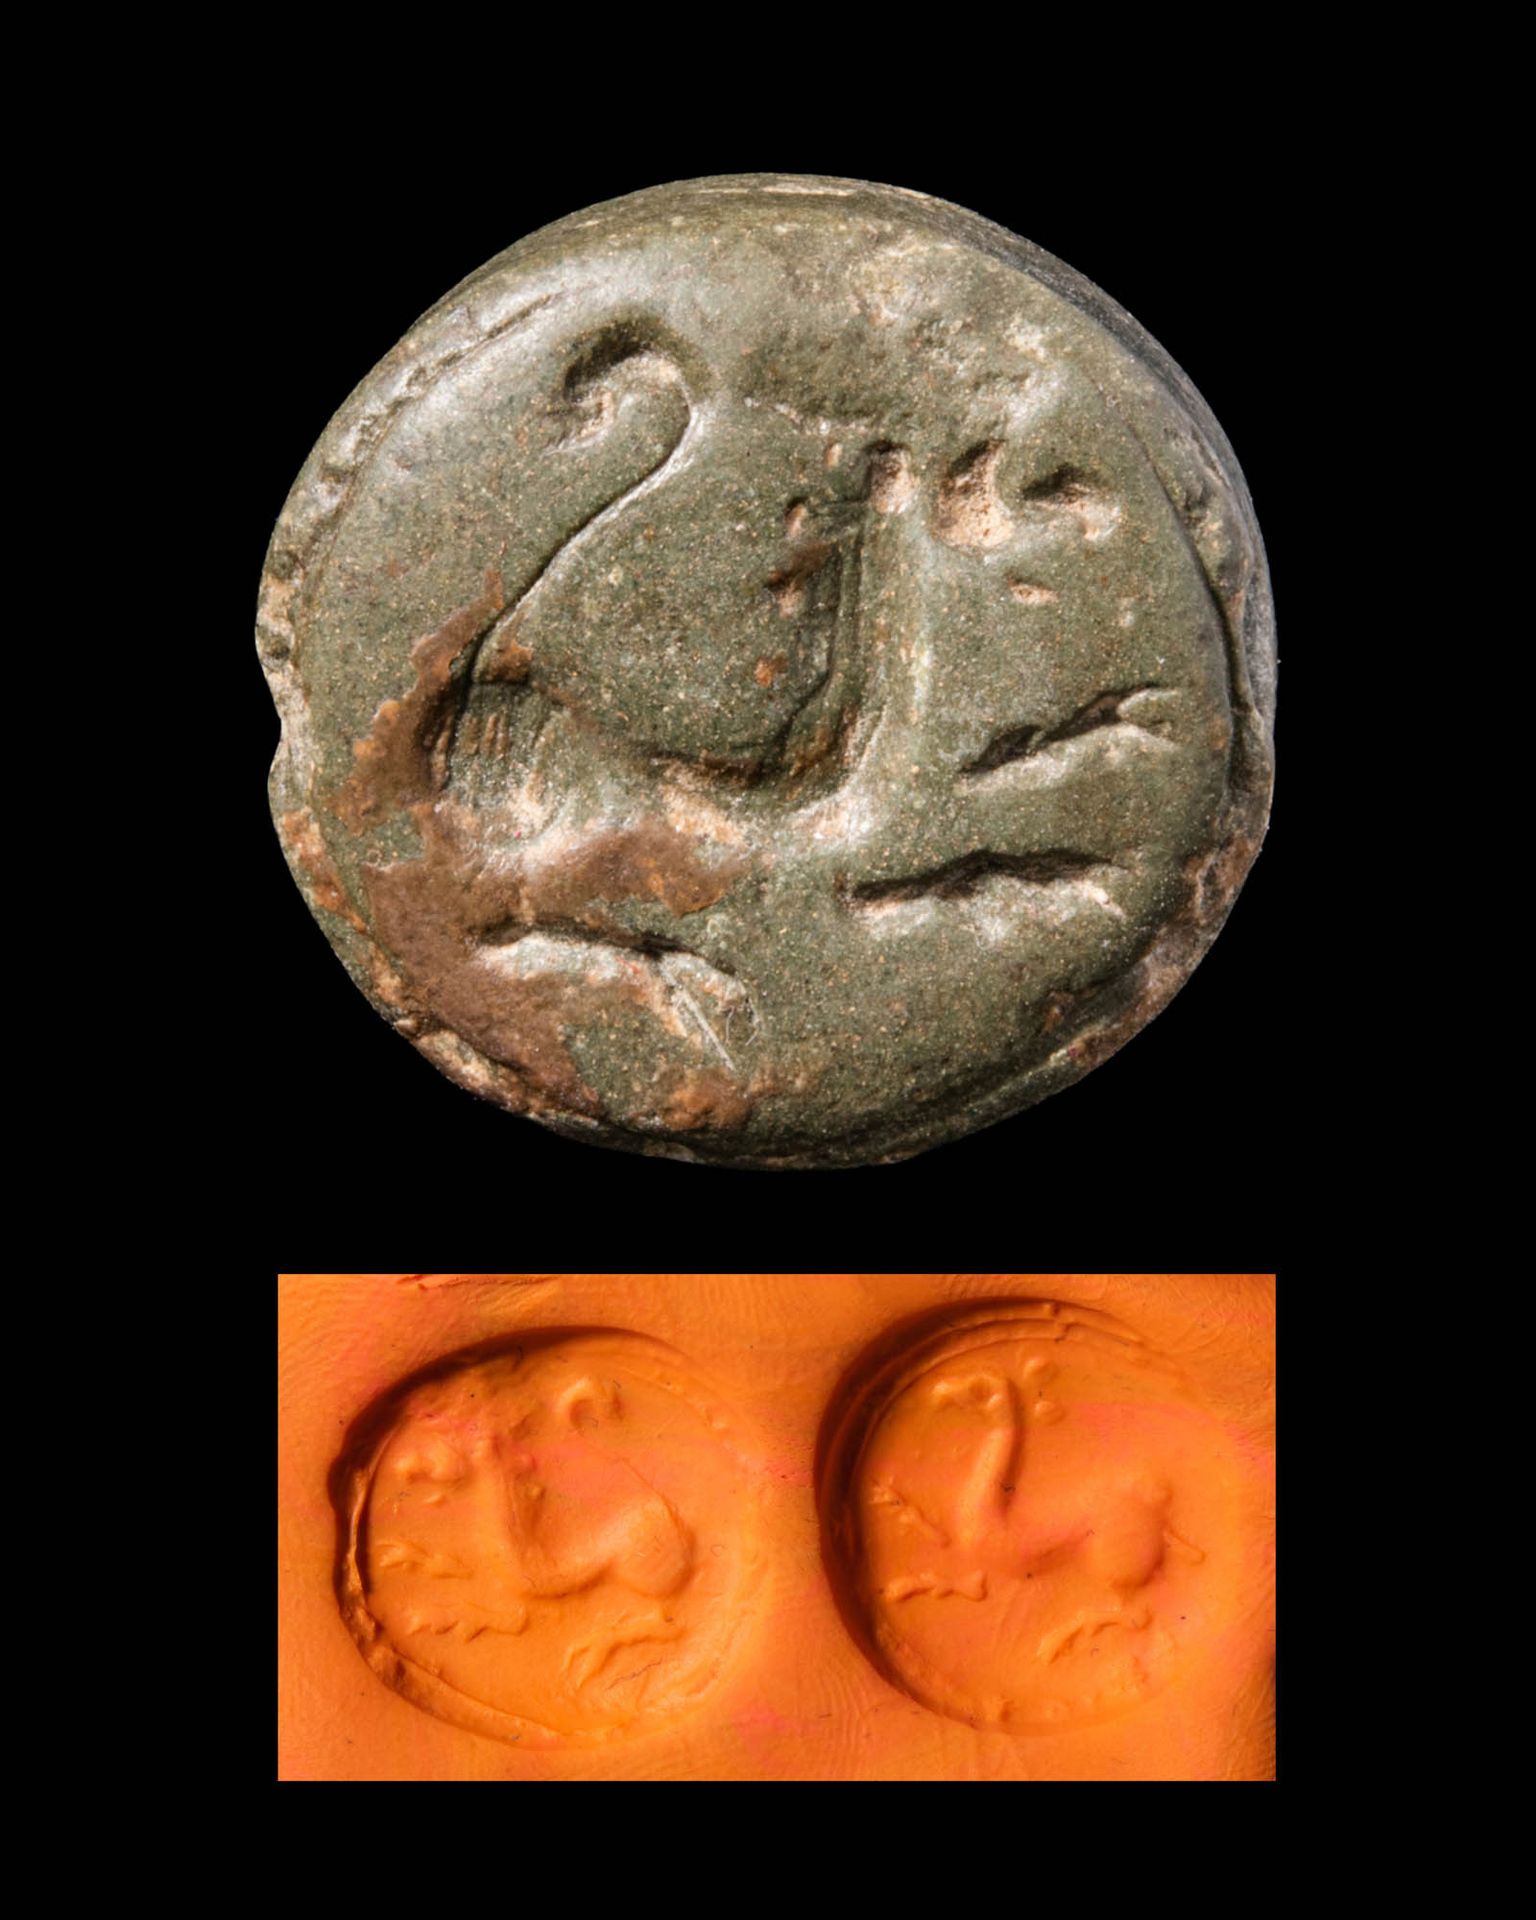 BACTRIAN DOUBLE STAMP SEAL 约公元前一千年公元前一千年
这是一枚巴克特里亚绿石双印章。印章正面描绘了一只自然的狮子，反面则是一只羚羊。&hellip;